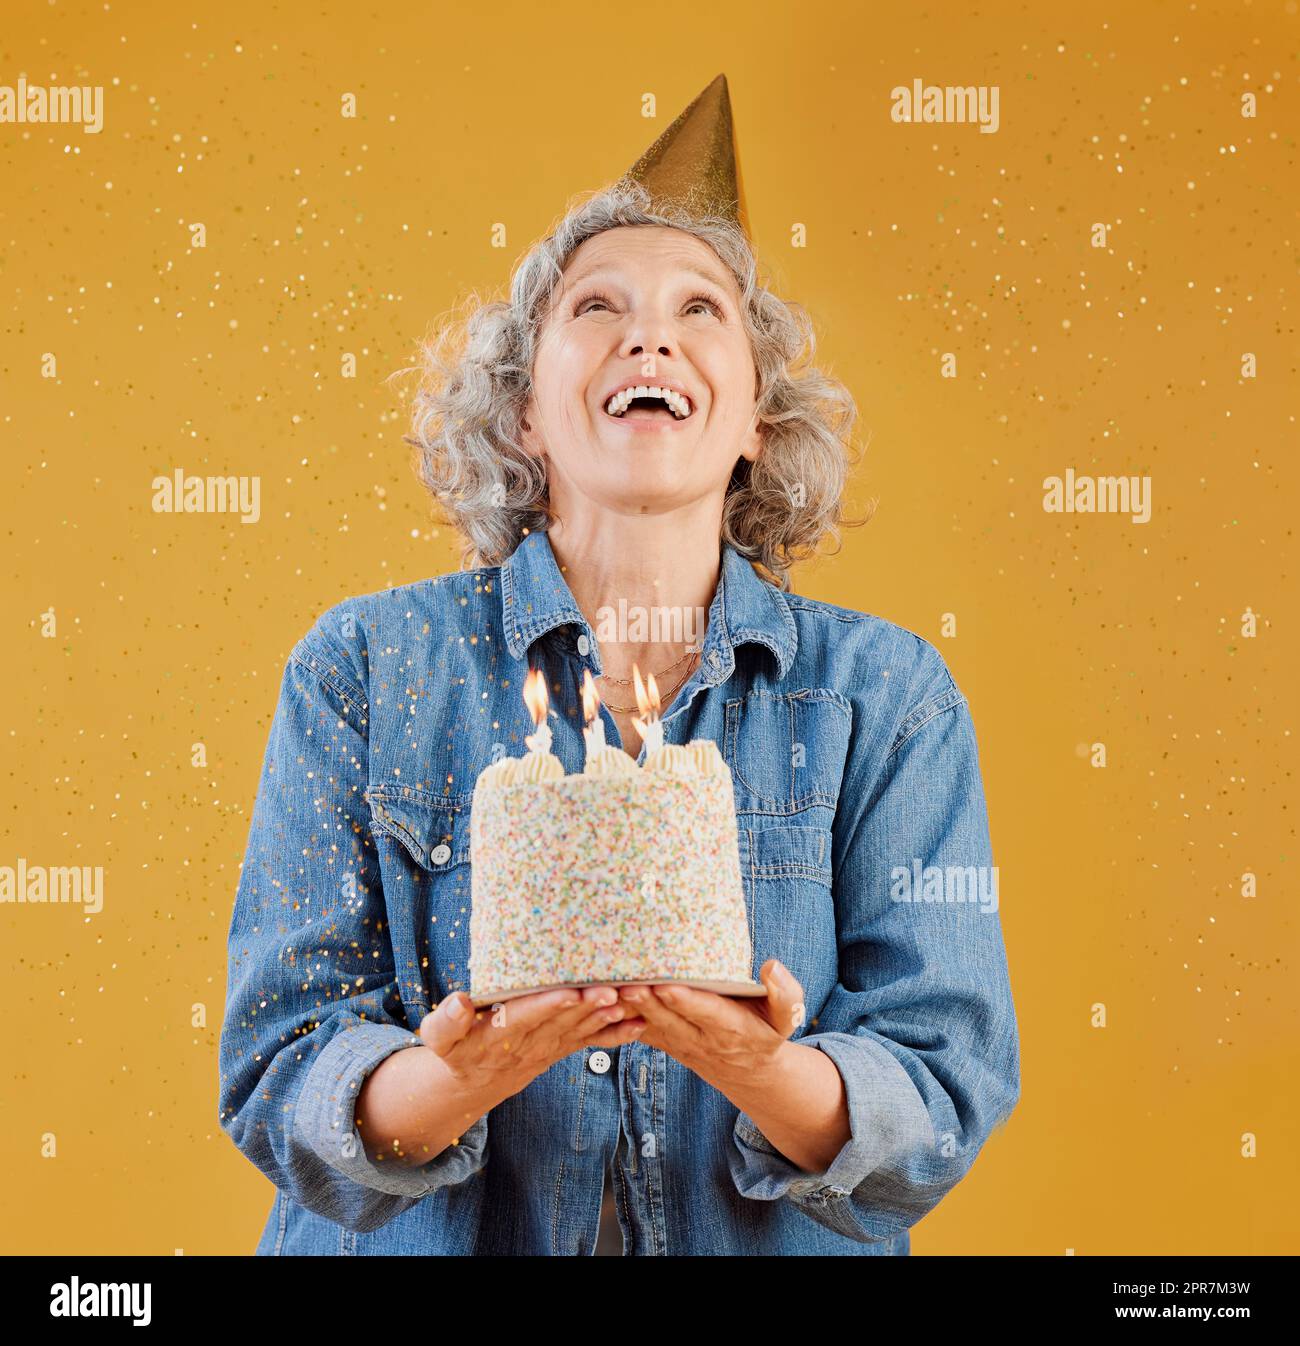 Una donna caucasica matura felice che indossa un cappello di compleanno e tiene in mano una torta mentre i coriandoli cadono dall'alto su uno sfondo giallo nello studio. Donna bianca sorridente che festeggia un altro anno Foto Stock